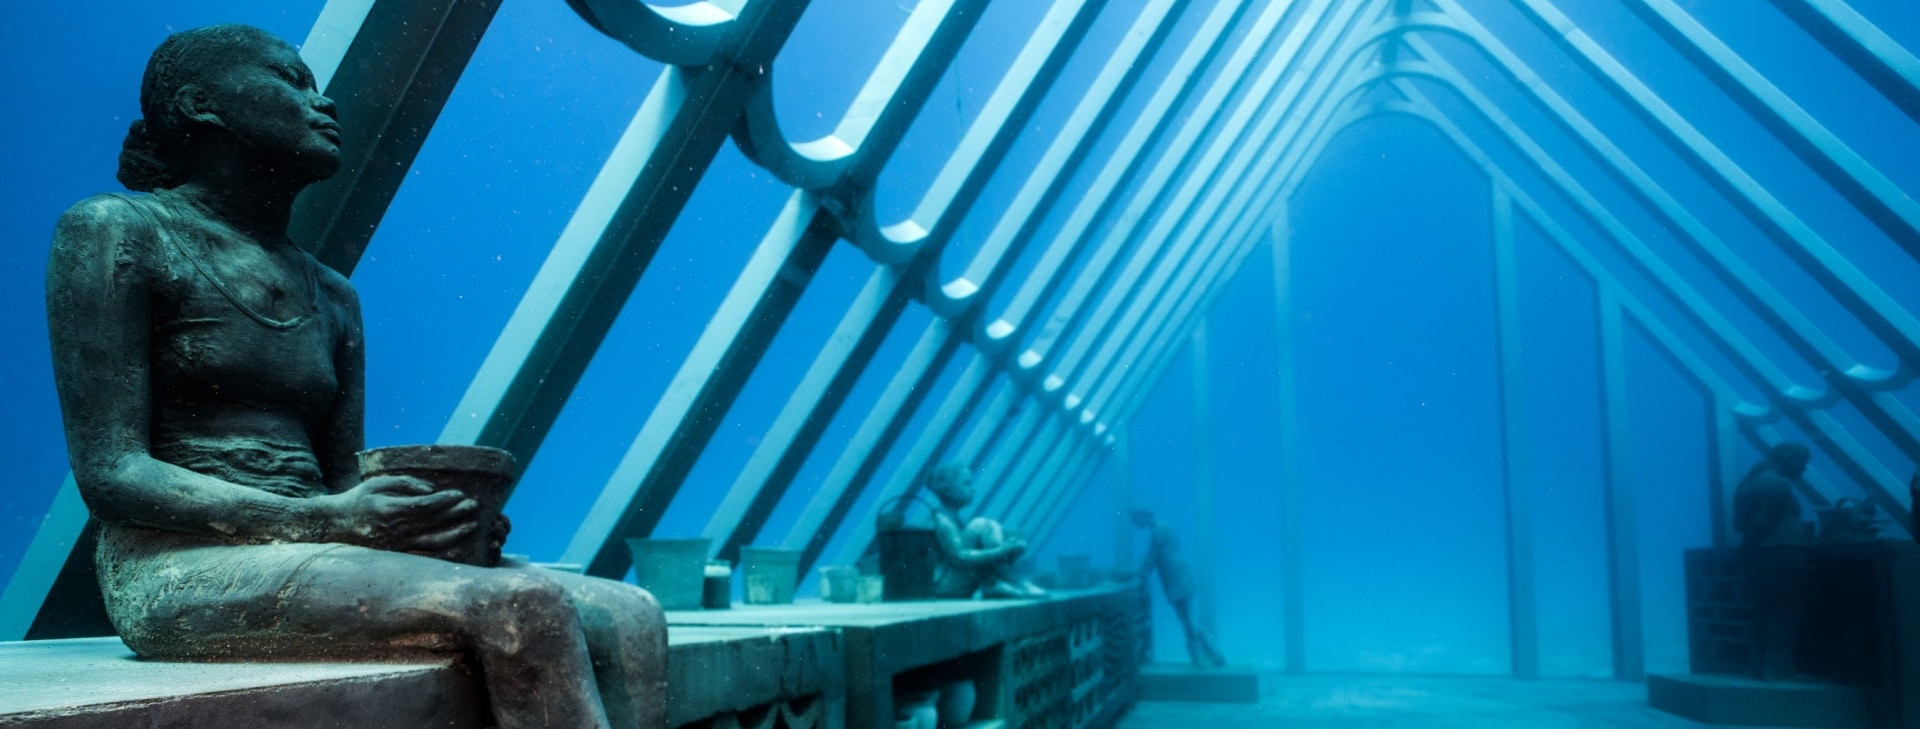 타운스빌 부근 수중 예술 박물관에 전시된 수중 조각상 © 맷 커녹(Matt Curnock)